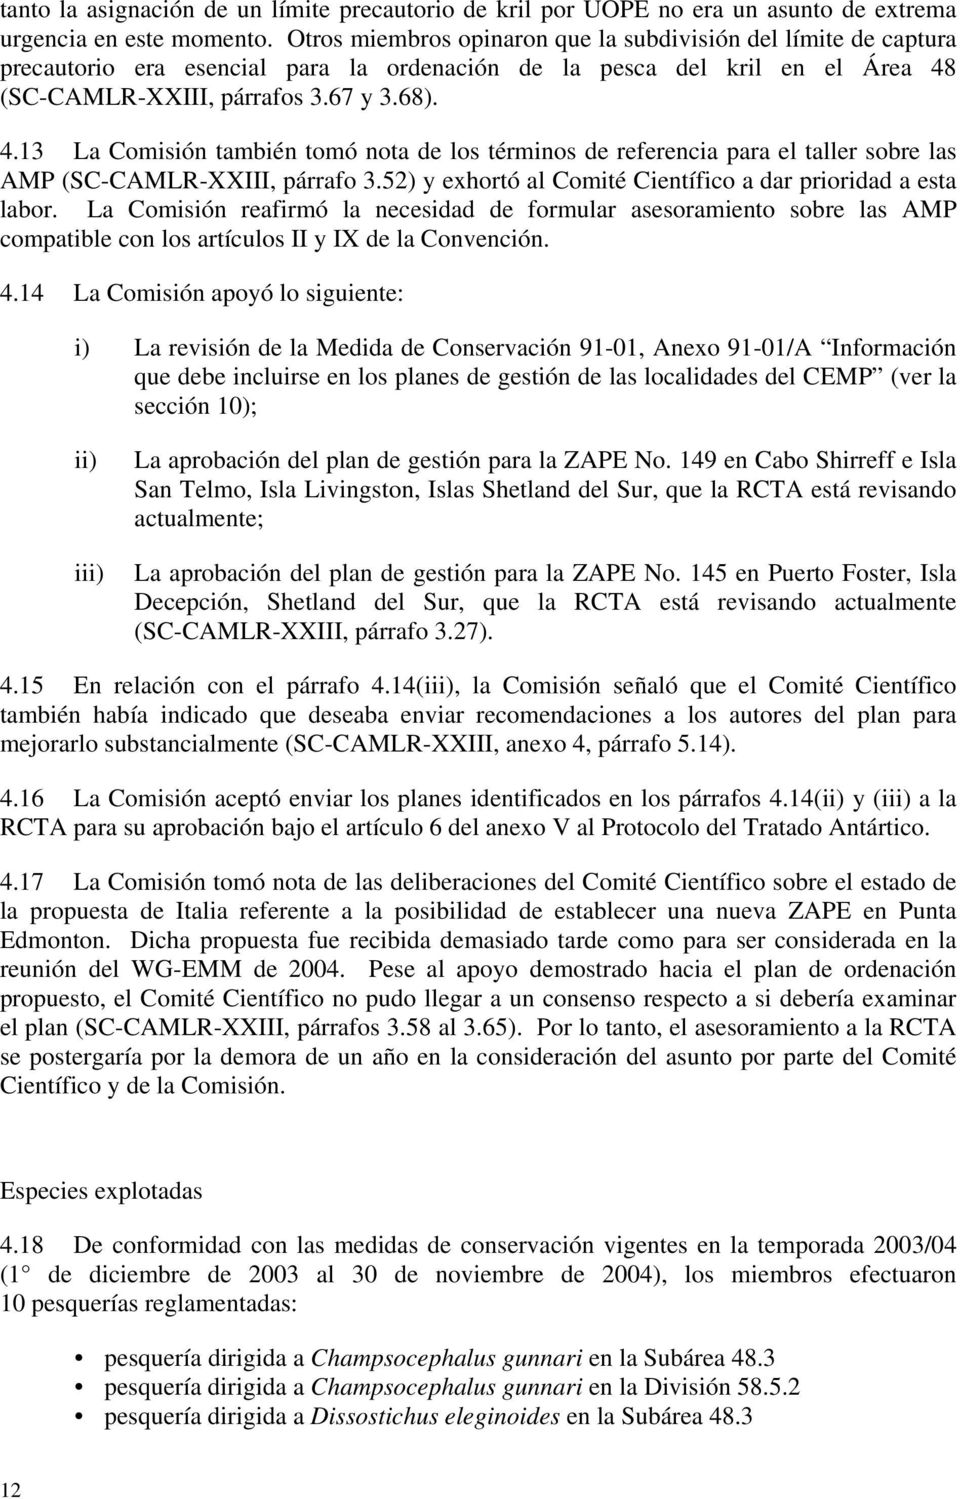 (SC-CAMLR-XXIII, párrafos 3.67 y 3.68). 4.13 La Comisión también tomó nota de los términos de referencia para el taller sobre las AMP (SC-CAMLR-XXIII, párrafo 3.